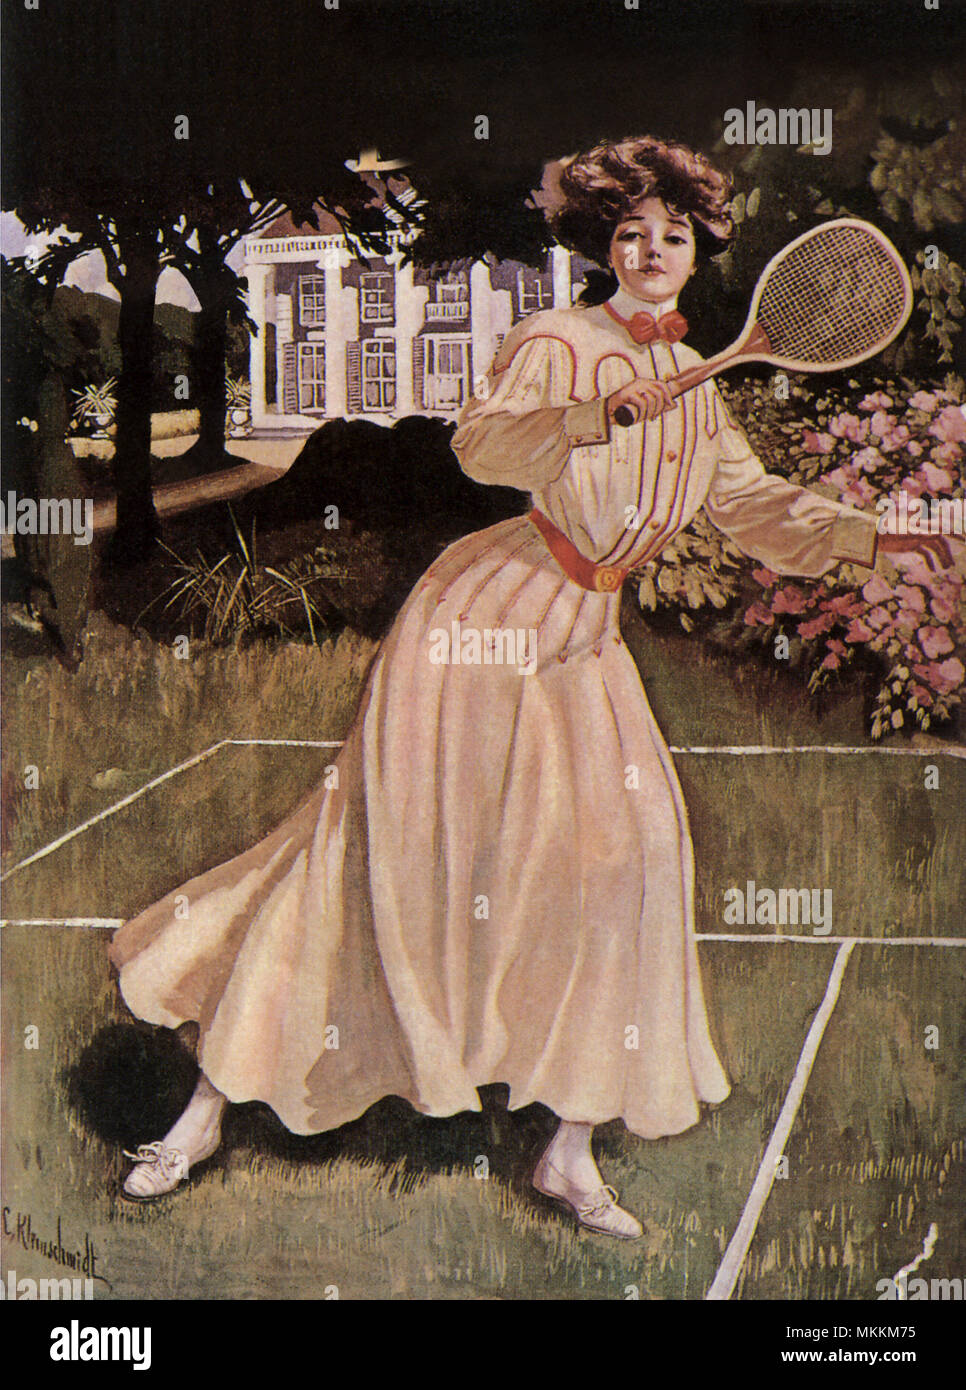 Dame jouant au tennis Banque D'Images